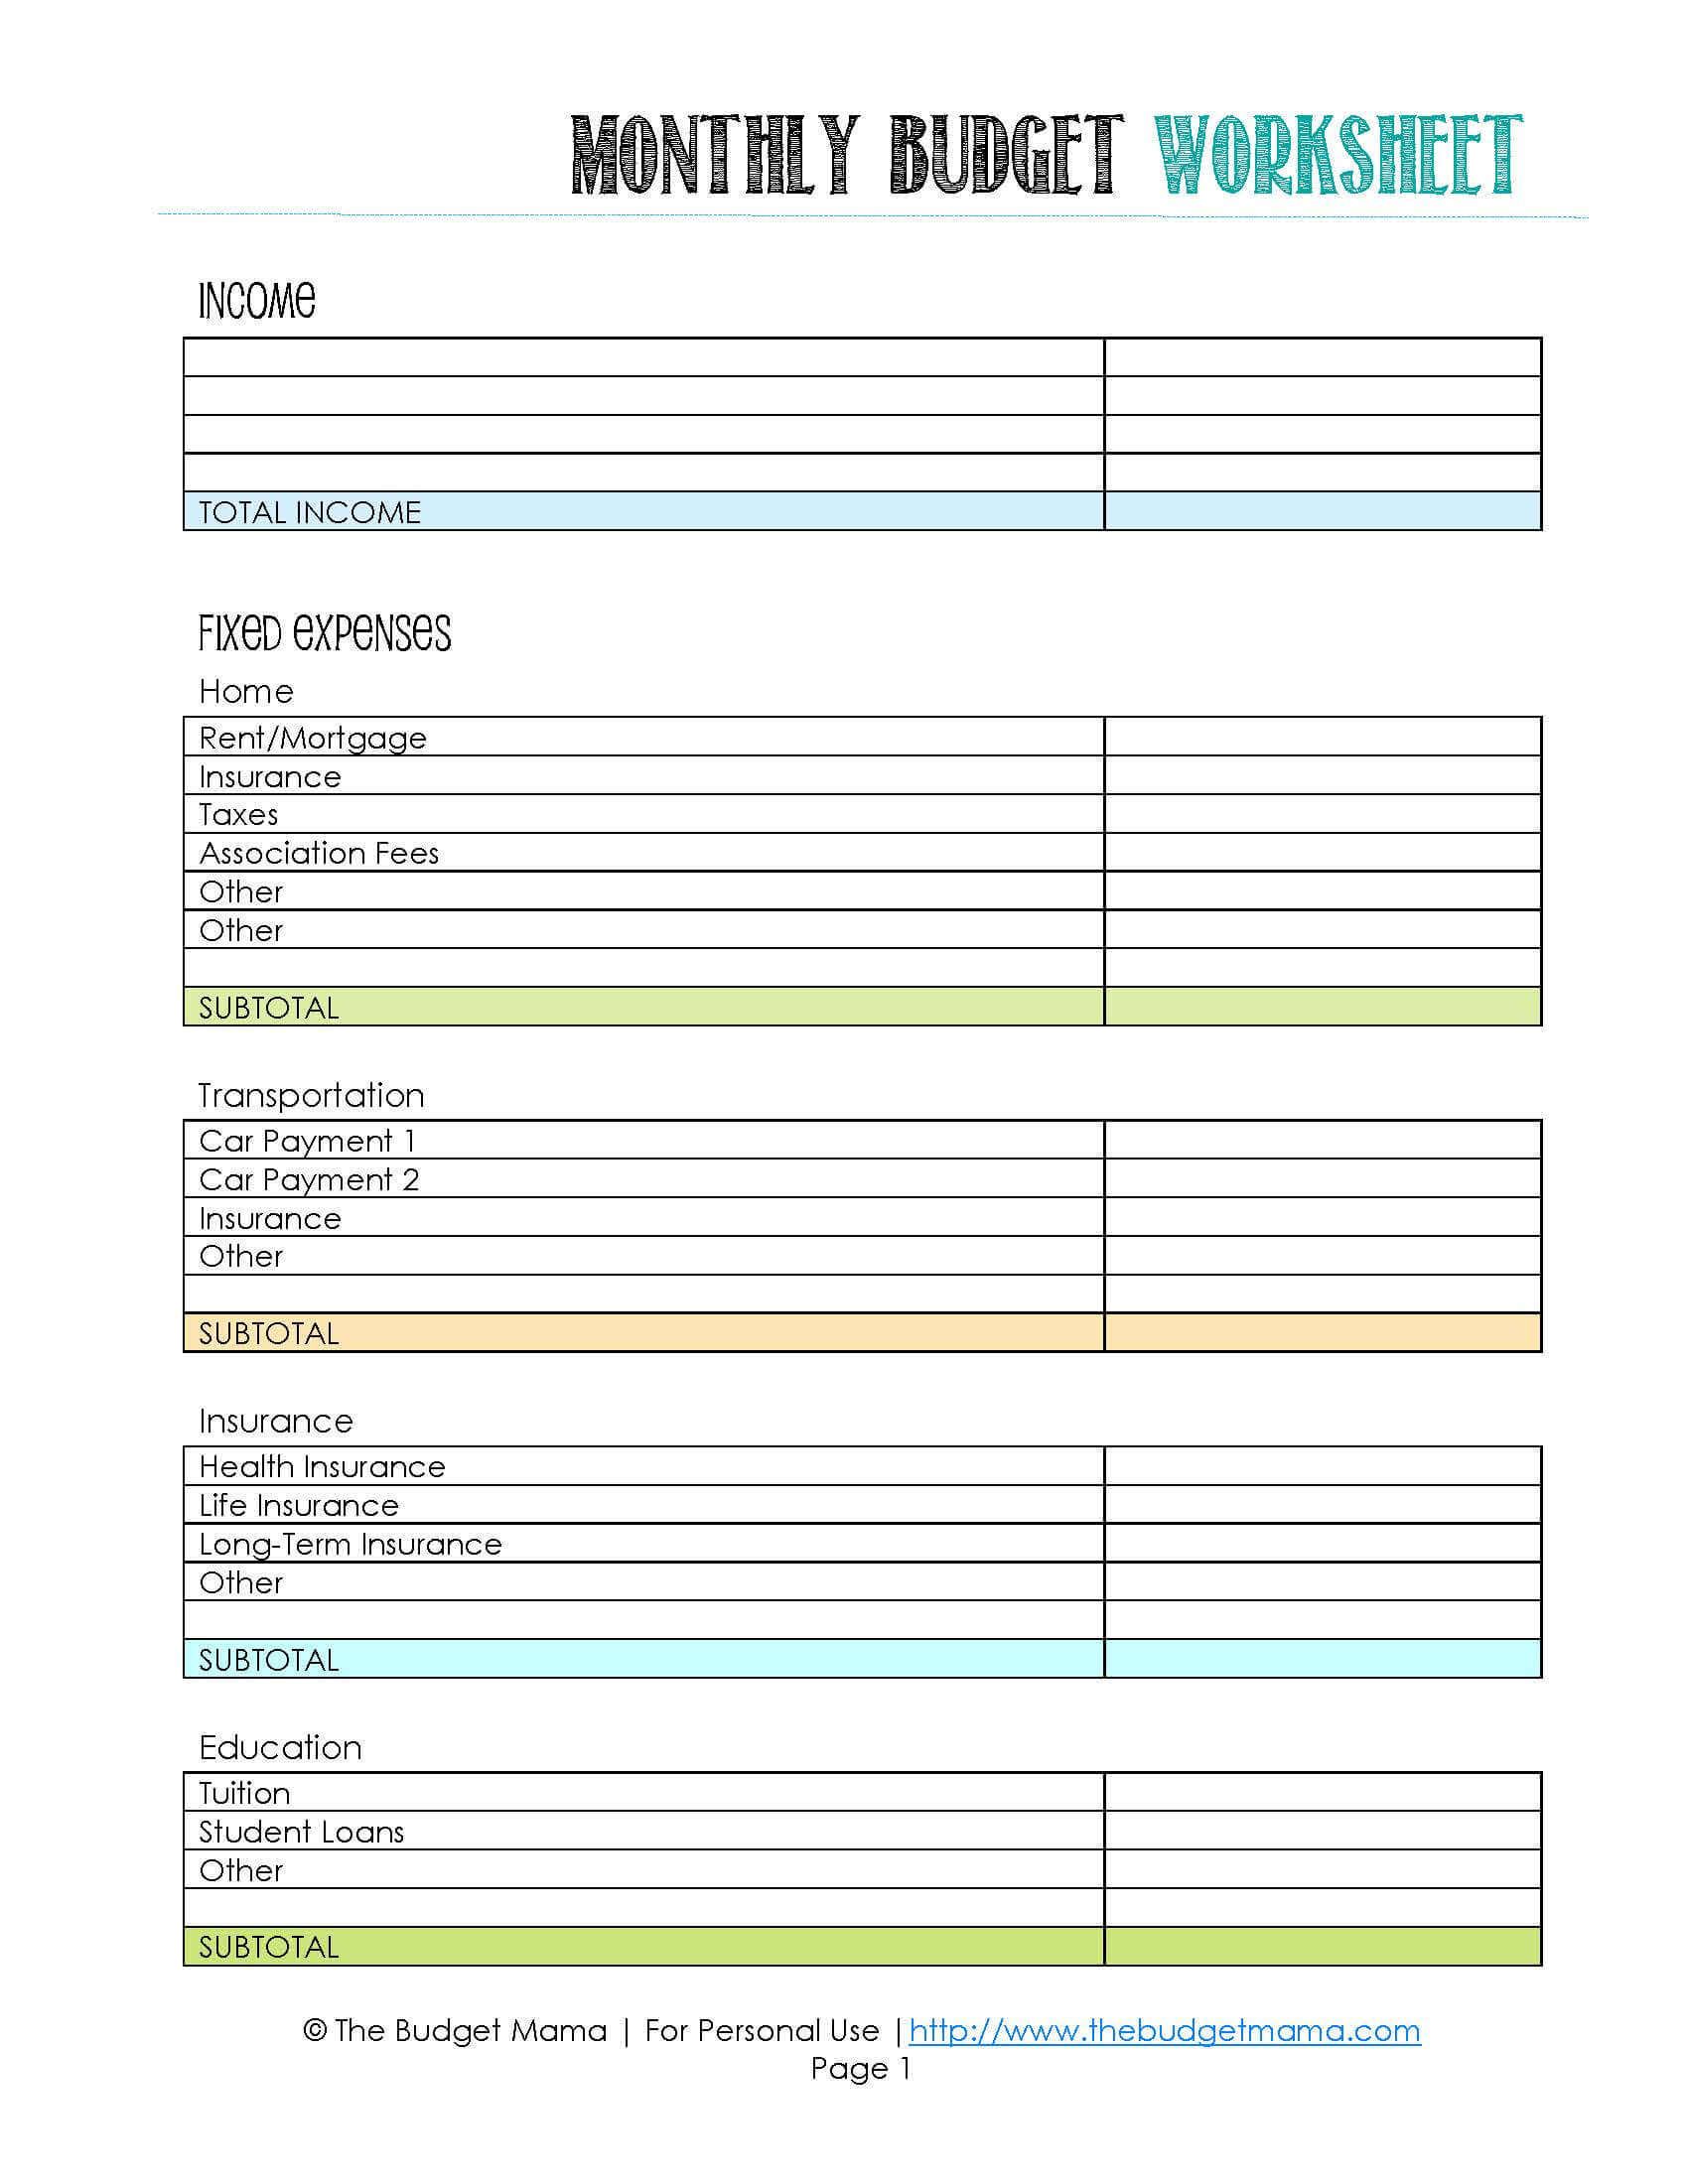 weekly-budget-worksheet-pdf-db-excel